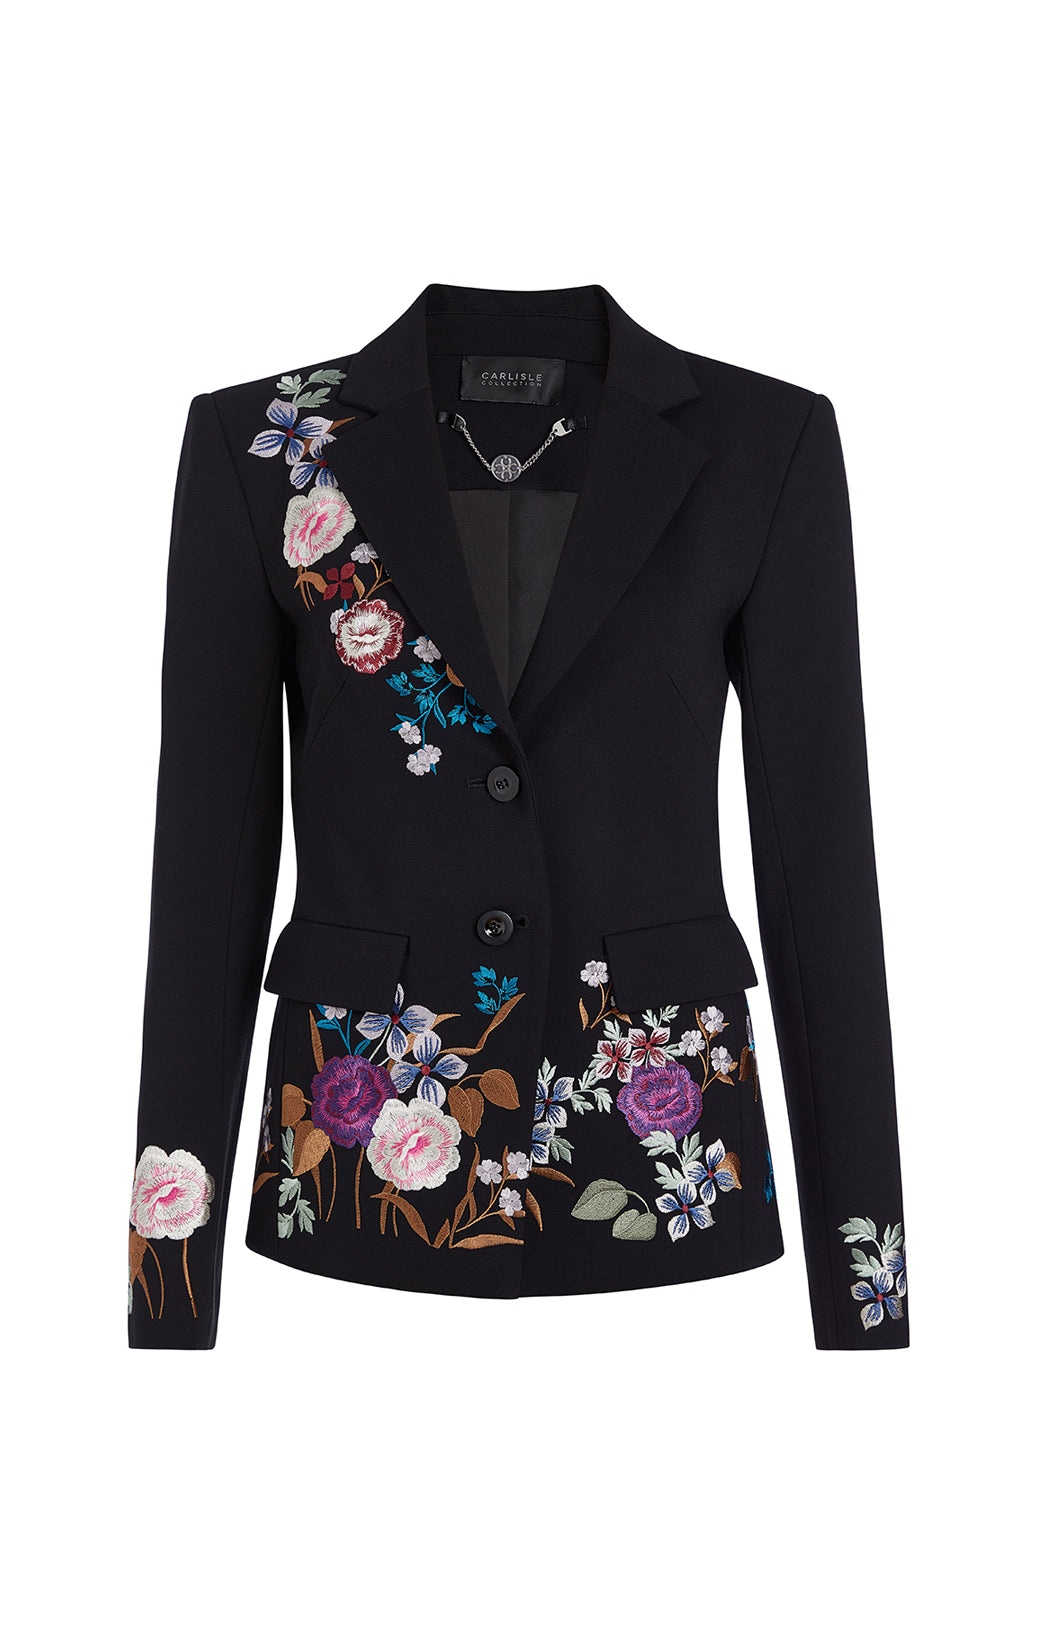 Splendor - Velvet Jacket With Rose Collar -  Product Image